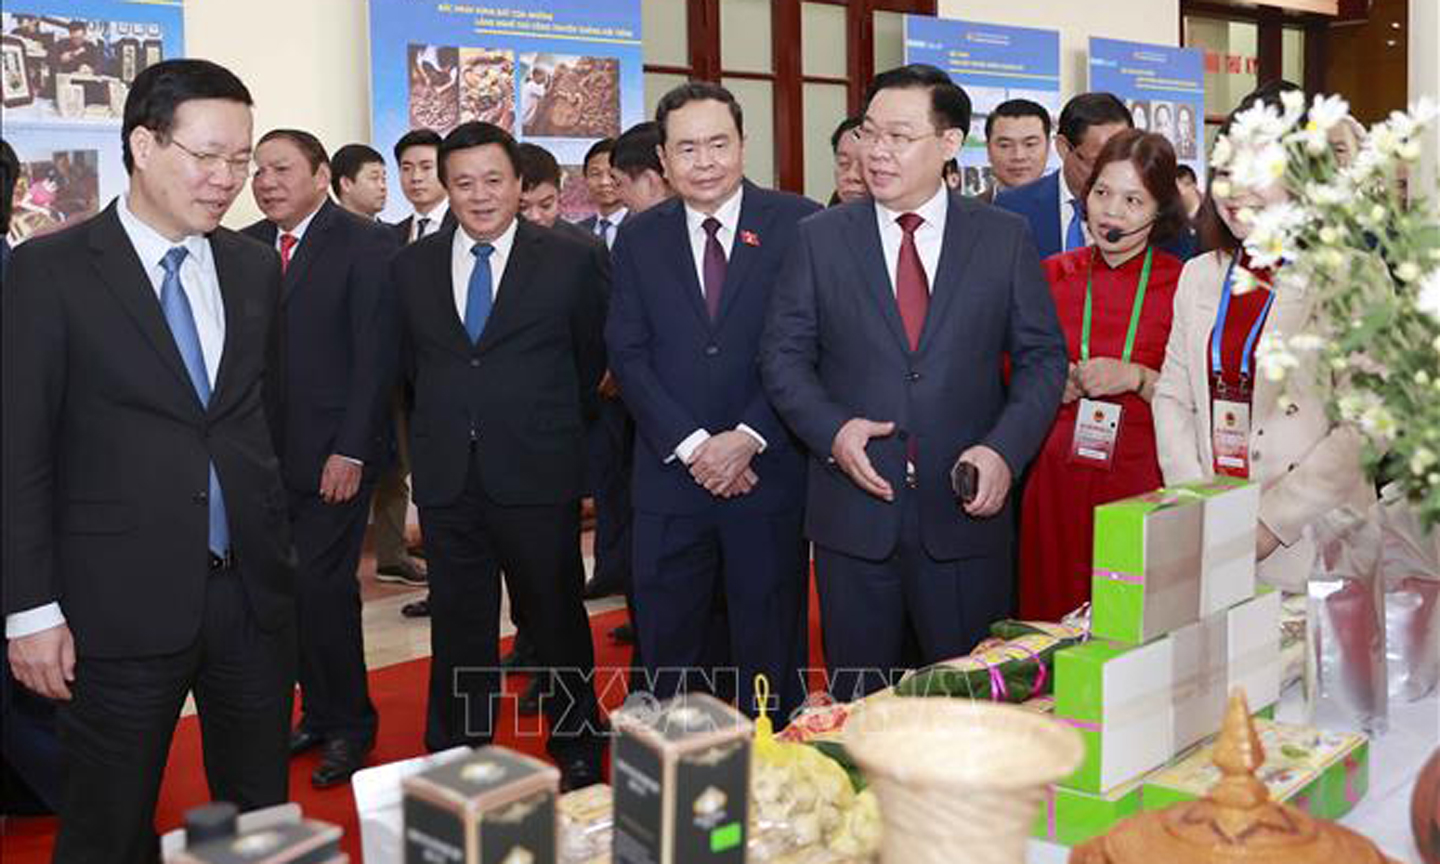 Chủ tịch Quốc hội Vương Đình Huệ và đại biểu tham quan gian trưng bày sản phẩm OCOP tại triển lãm Bản sắc văn hoá Bắc Ninh. Ảnh: Doãn Tấn/TTXVN